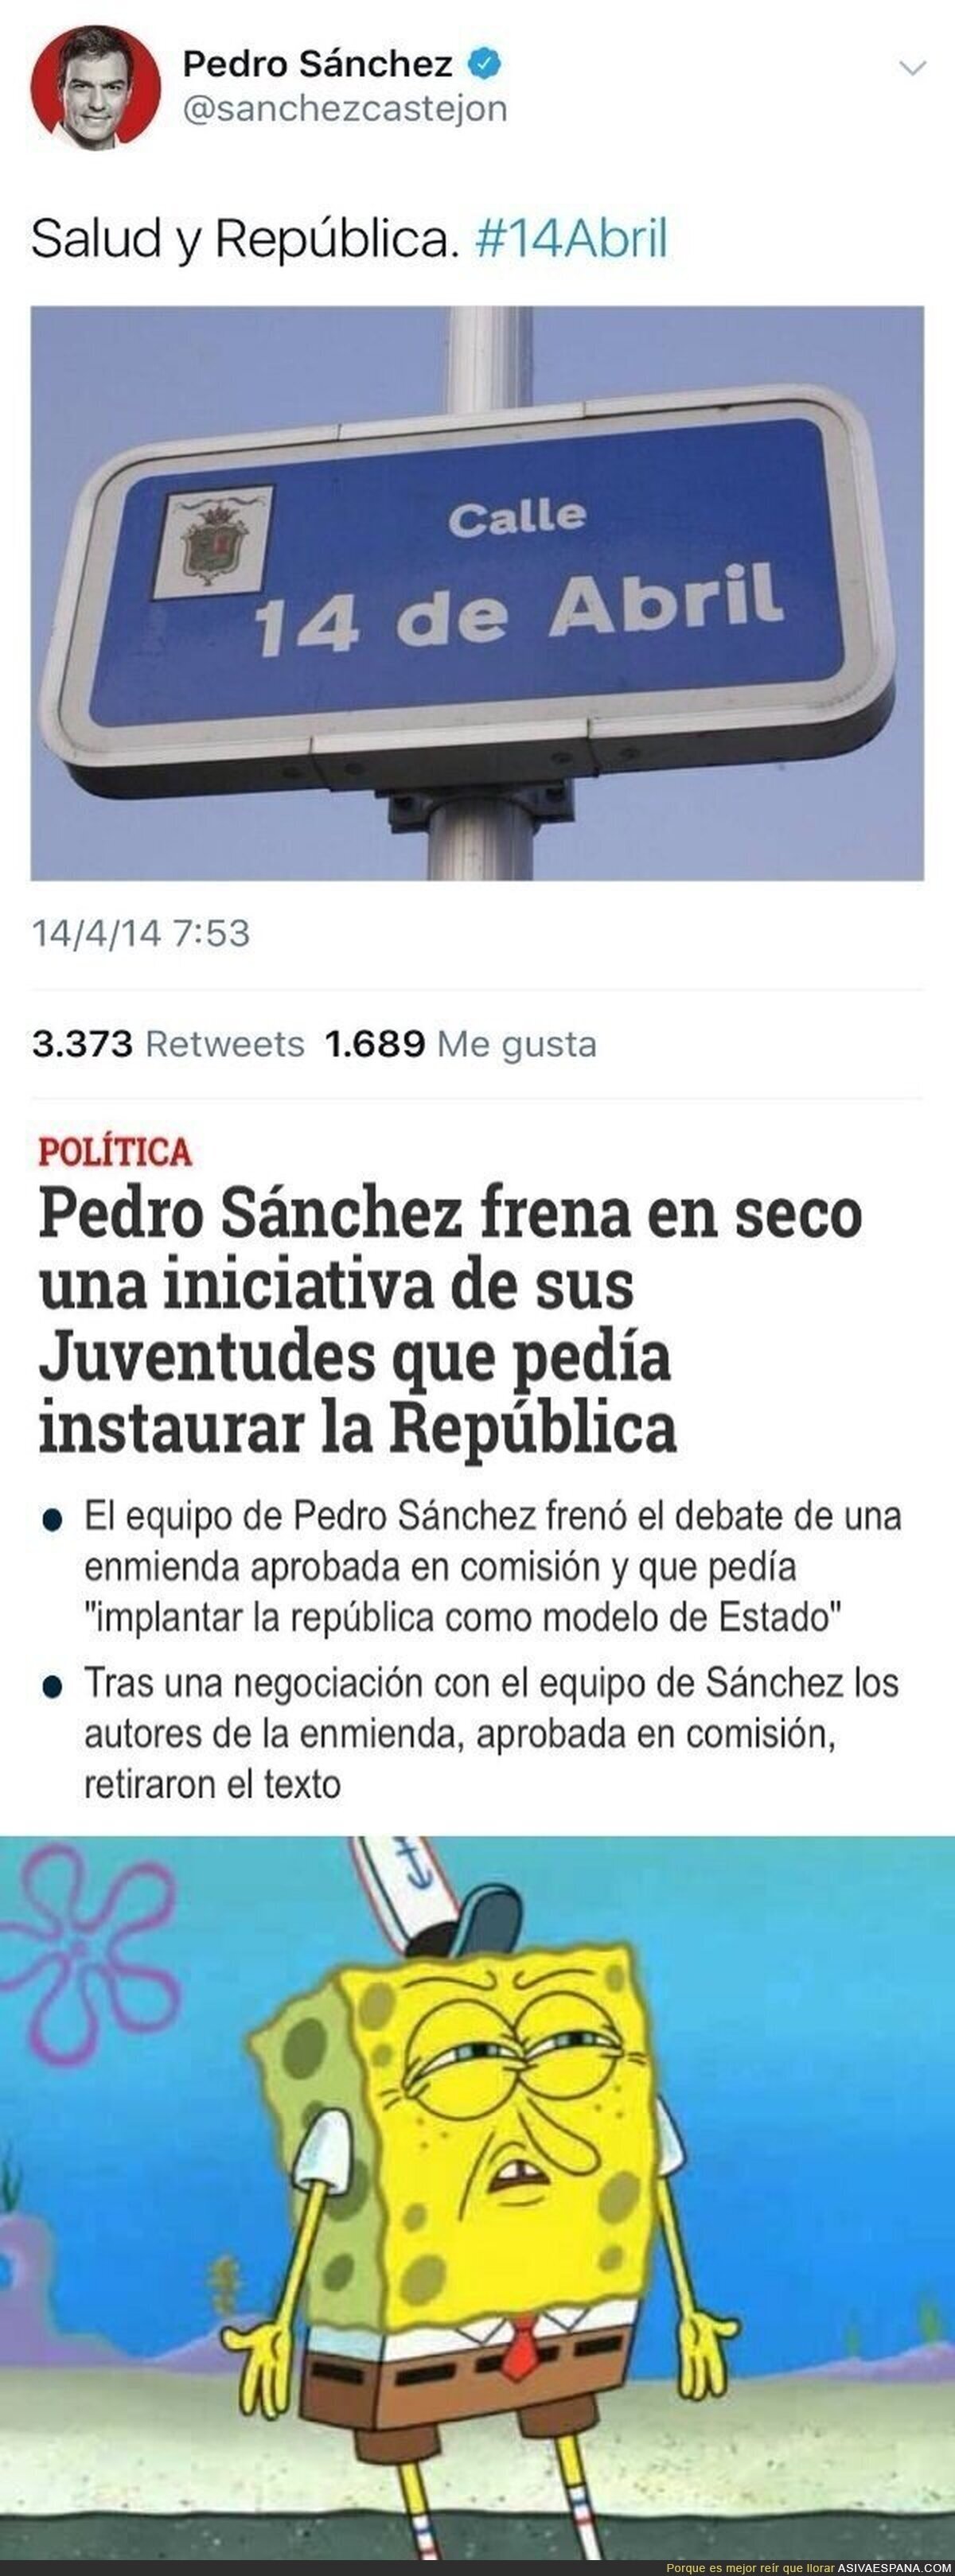 Pues vaya republicano el Pedro Sánchez